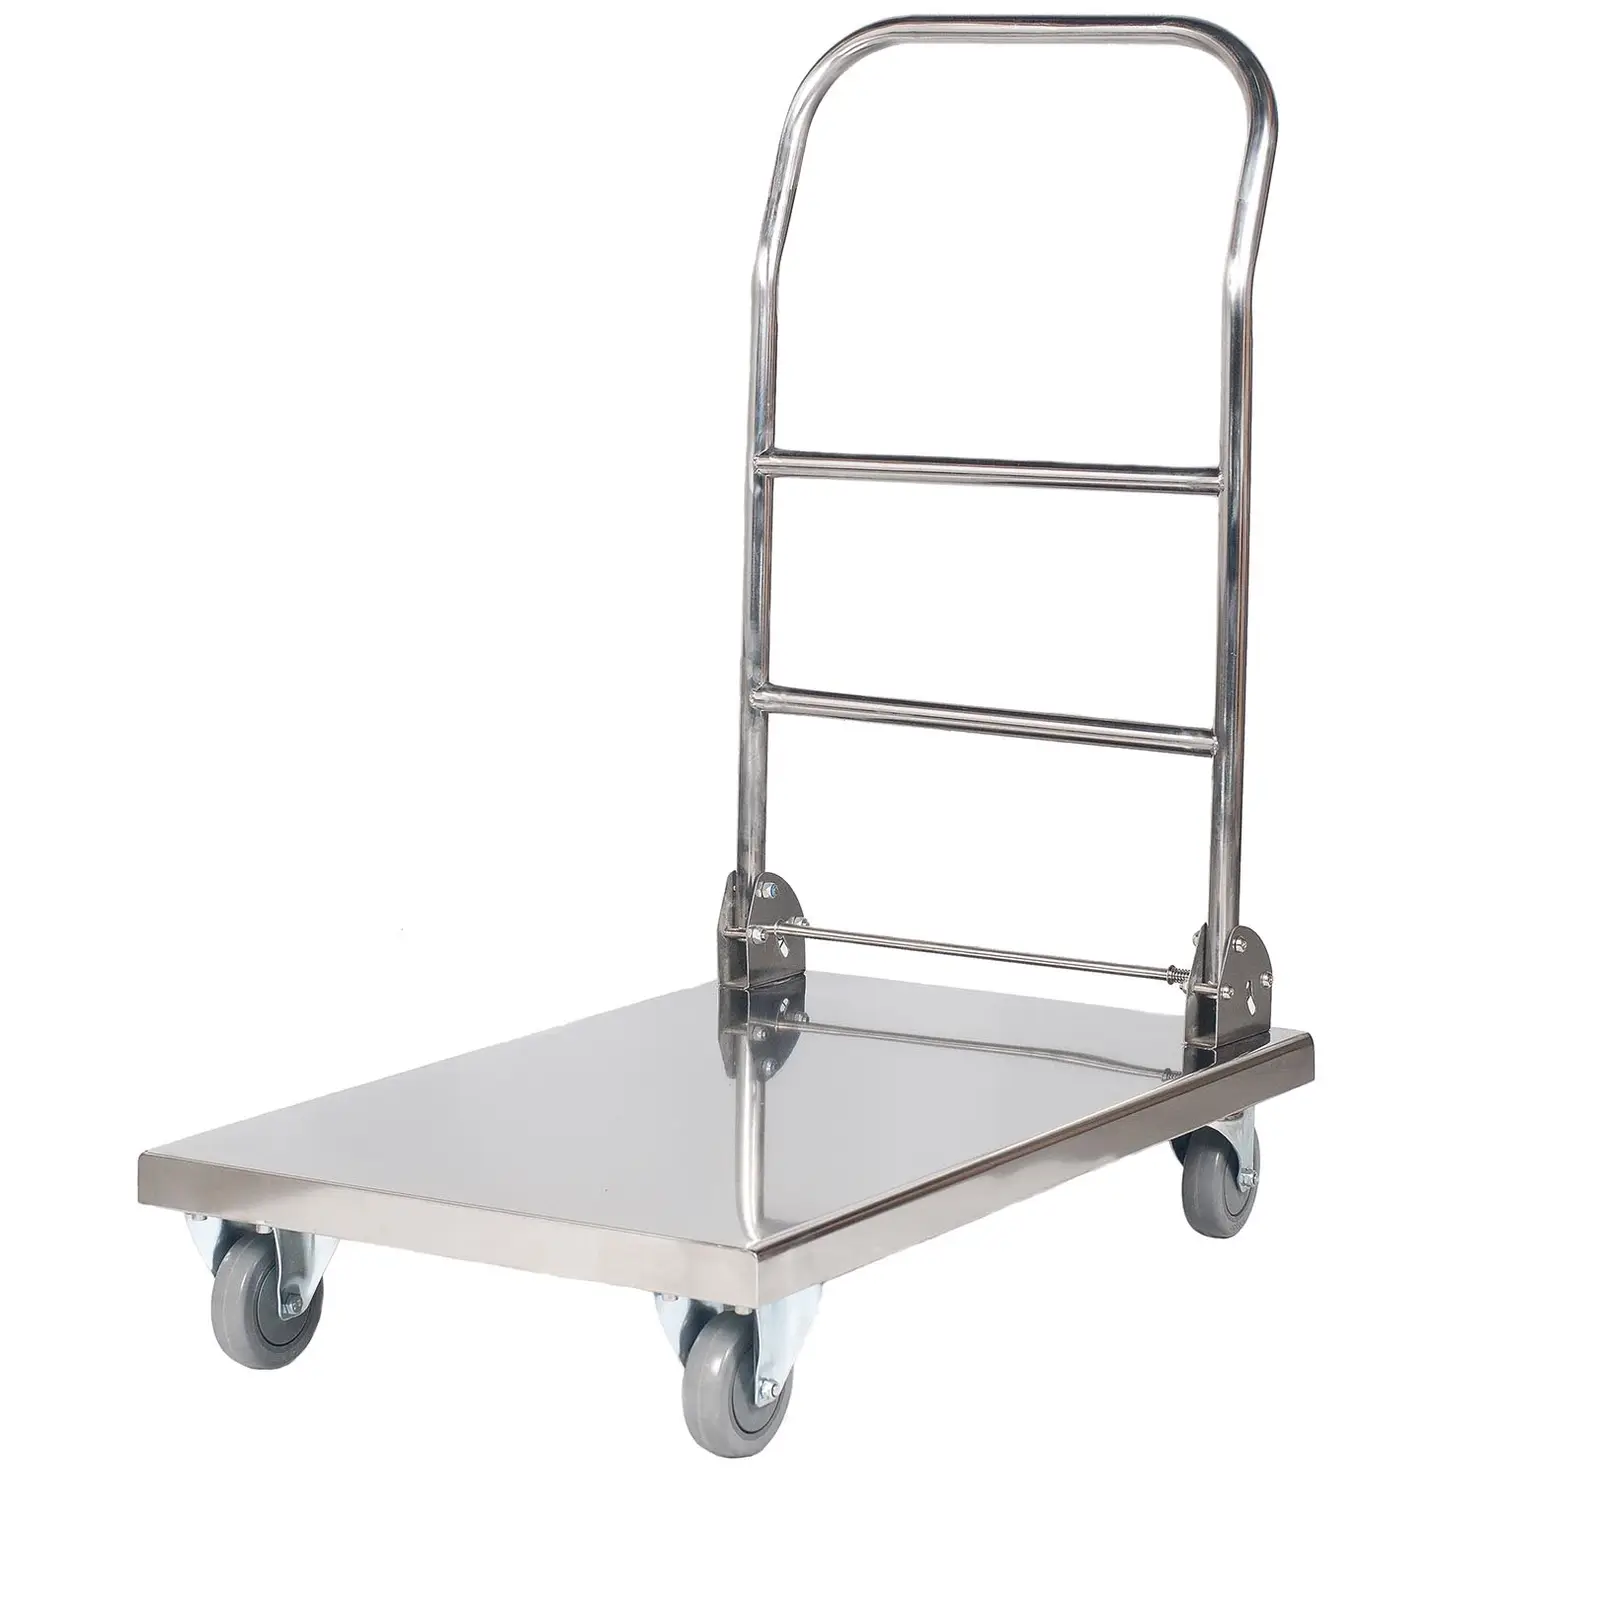 Platformos vežimėlis - iki 330 kg